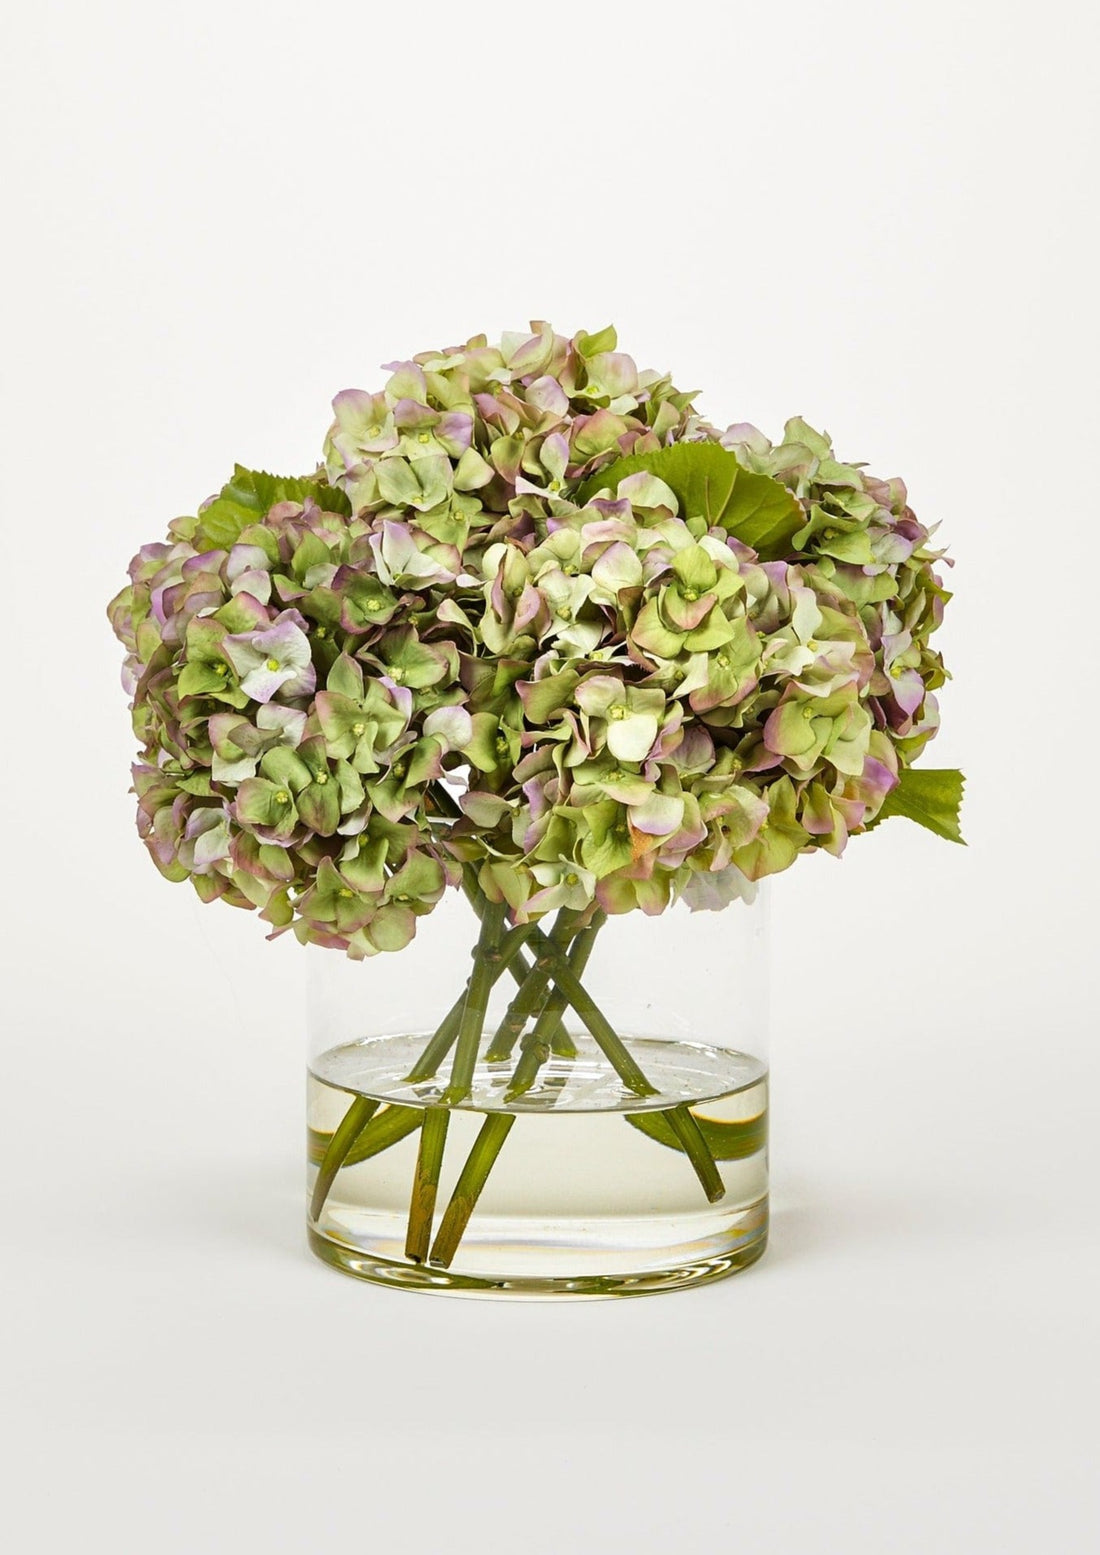 Afloral Faux Arrangements Green Purple Hydrangea Flowers in Glass Vase